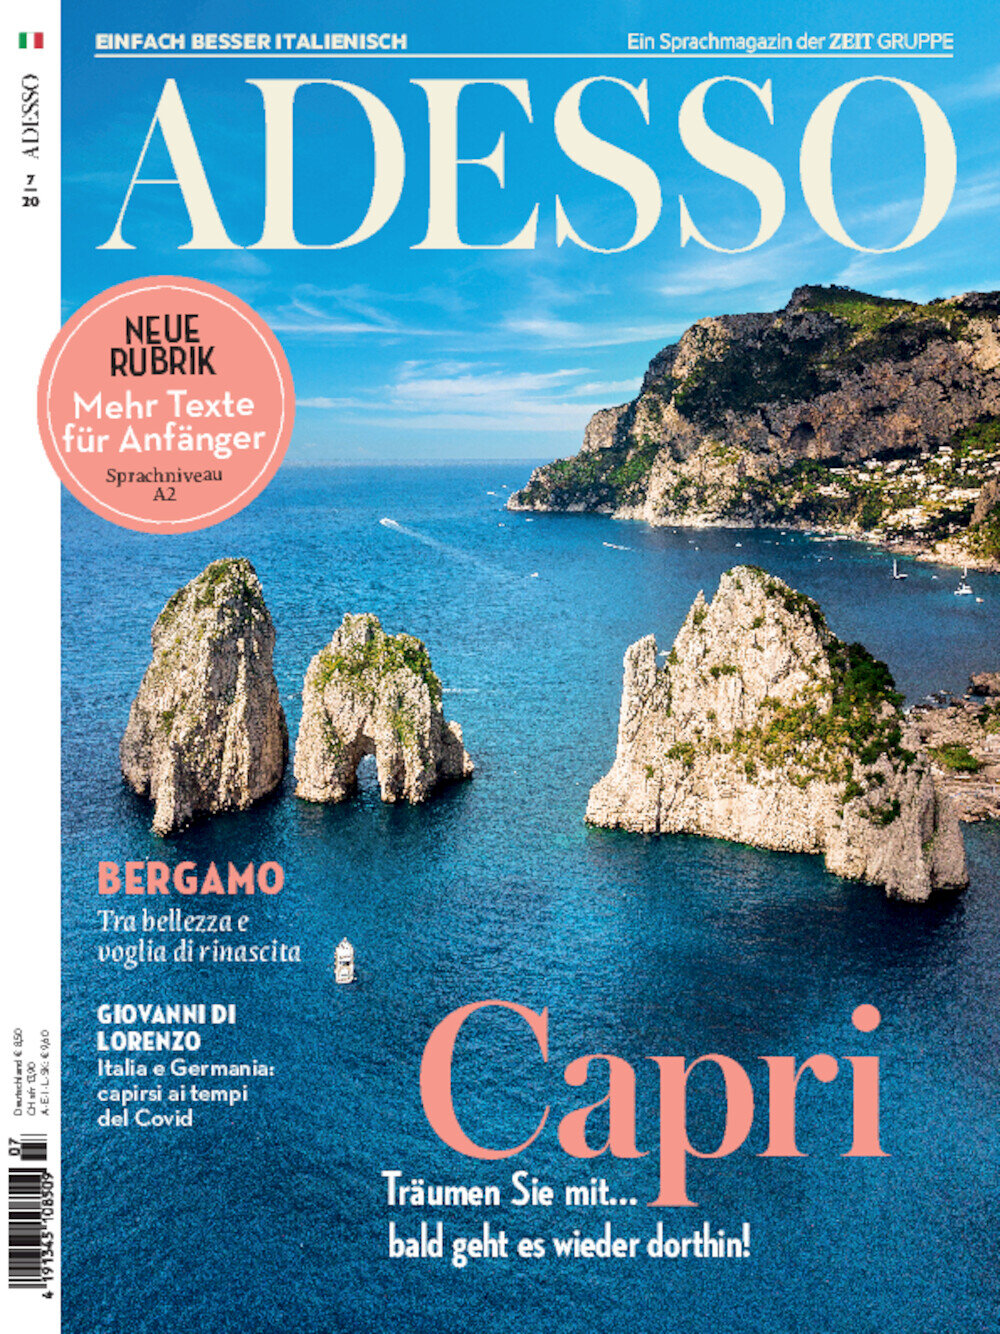 ADESSO eMagazine 07/2020